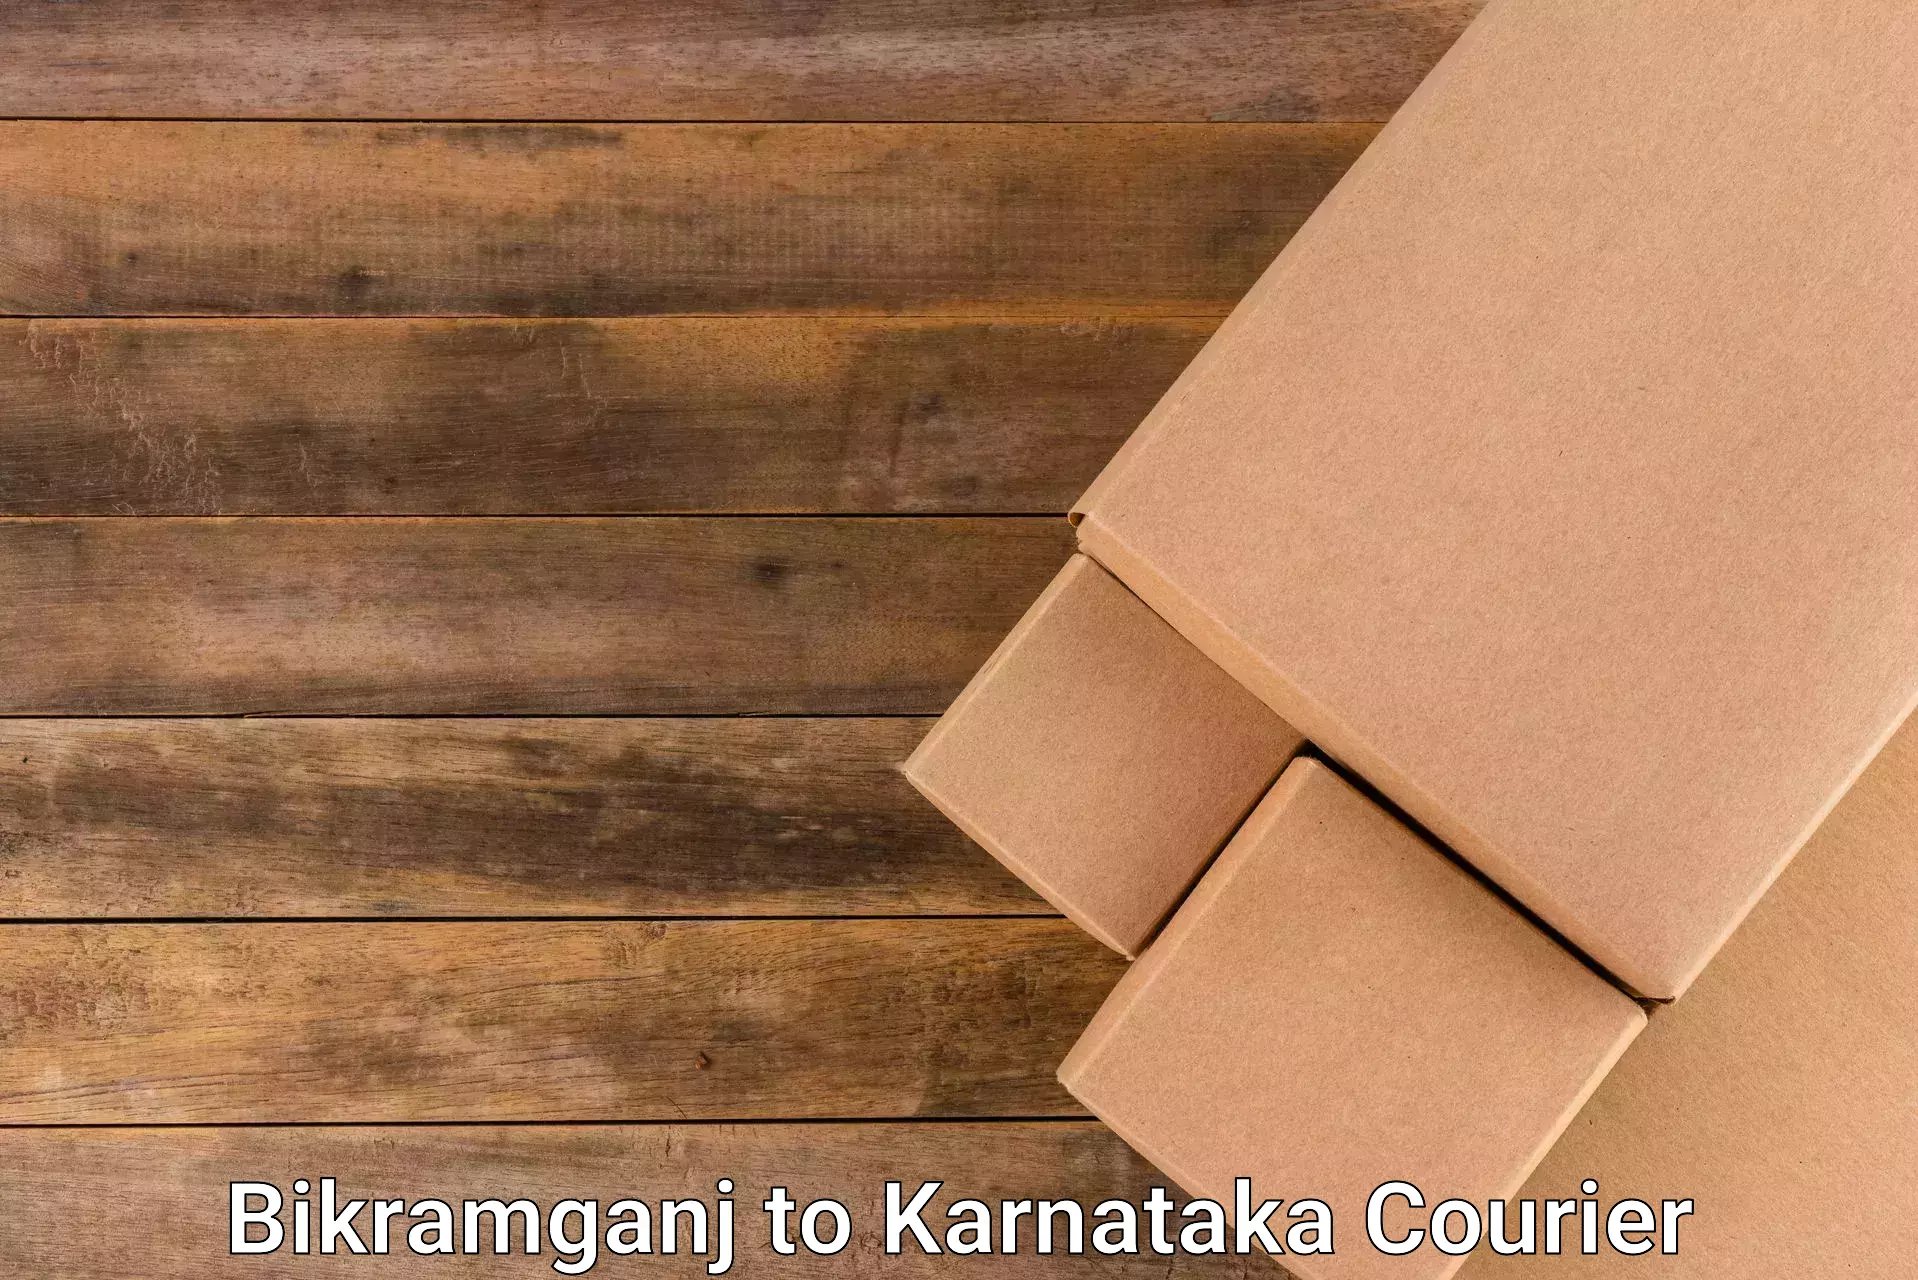 Reliable courier services Bikramganj to Udupi